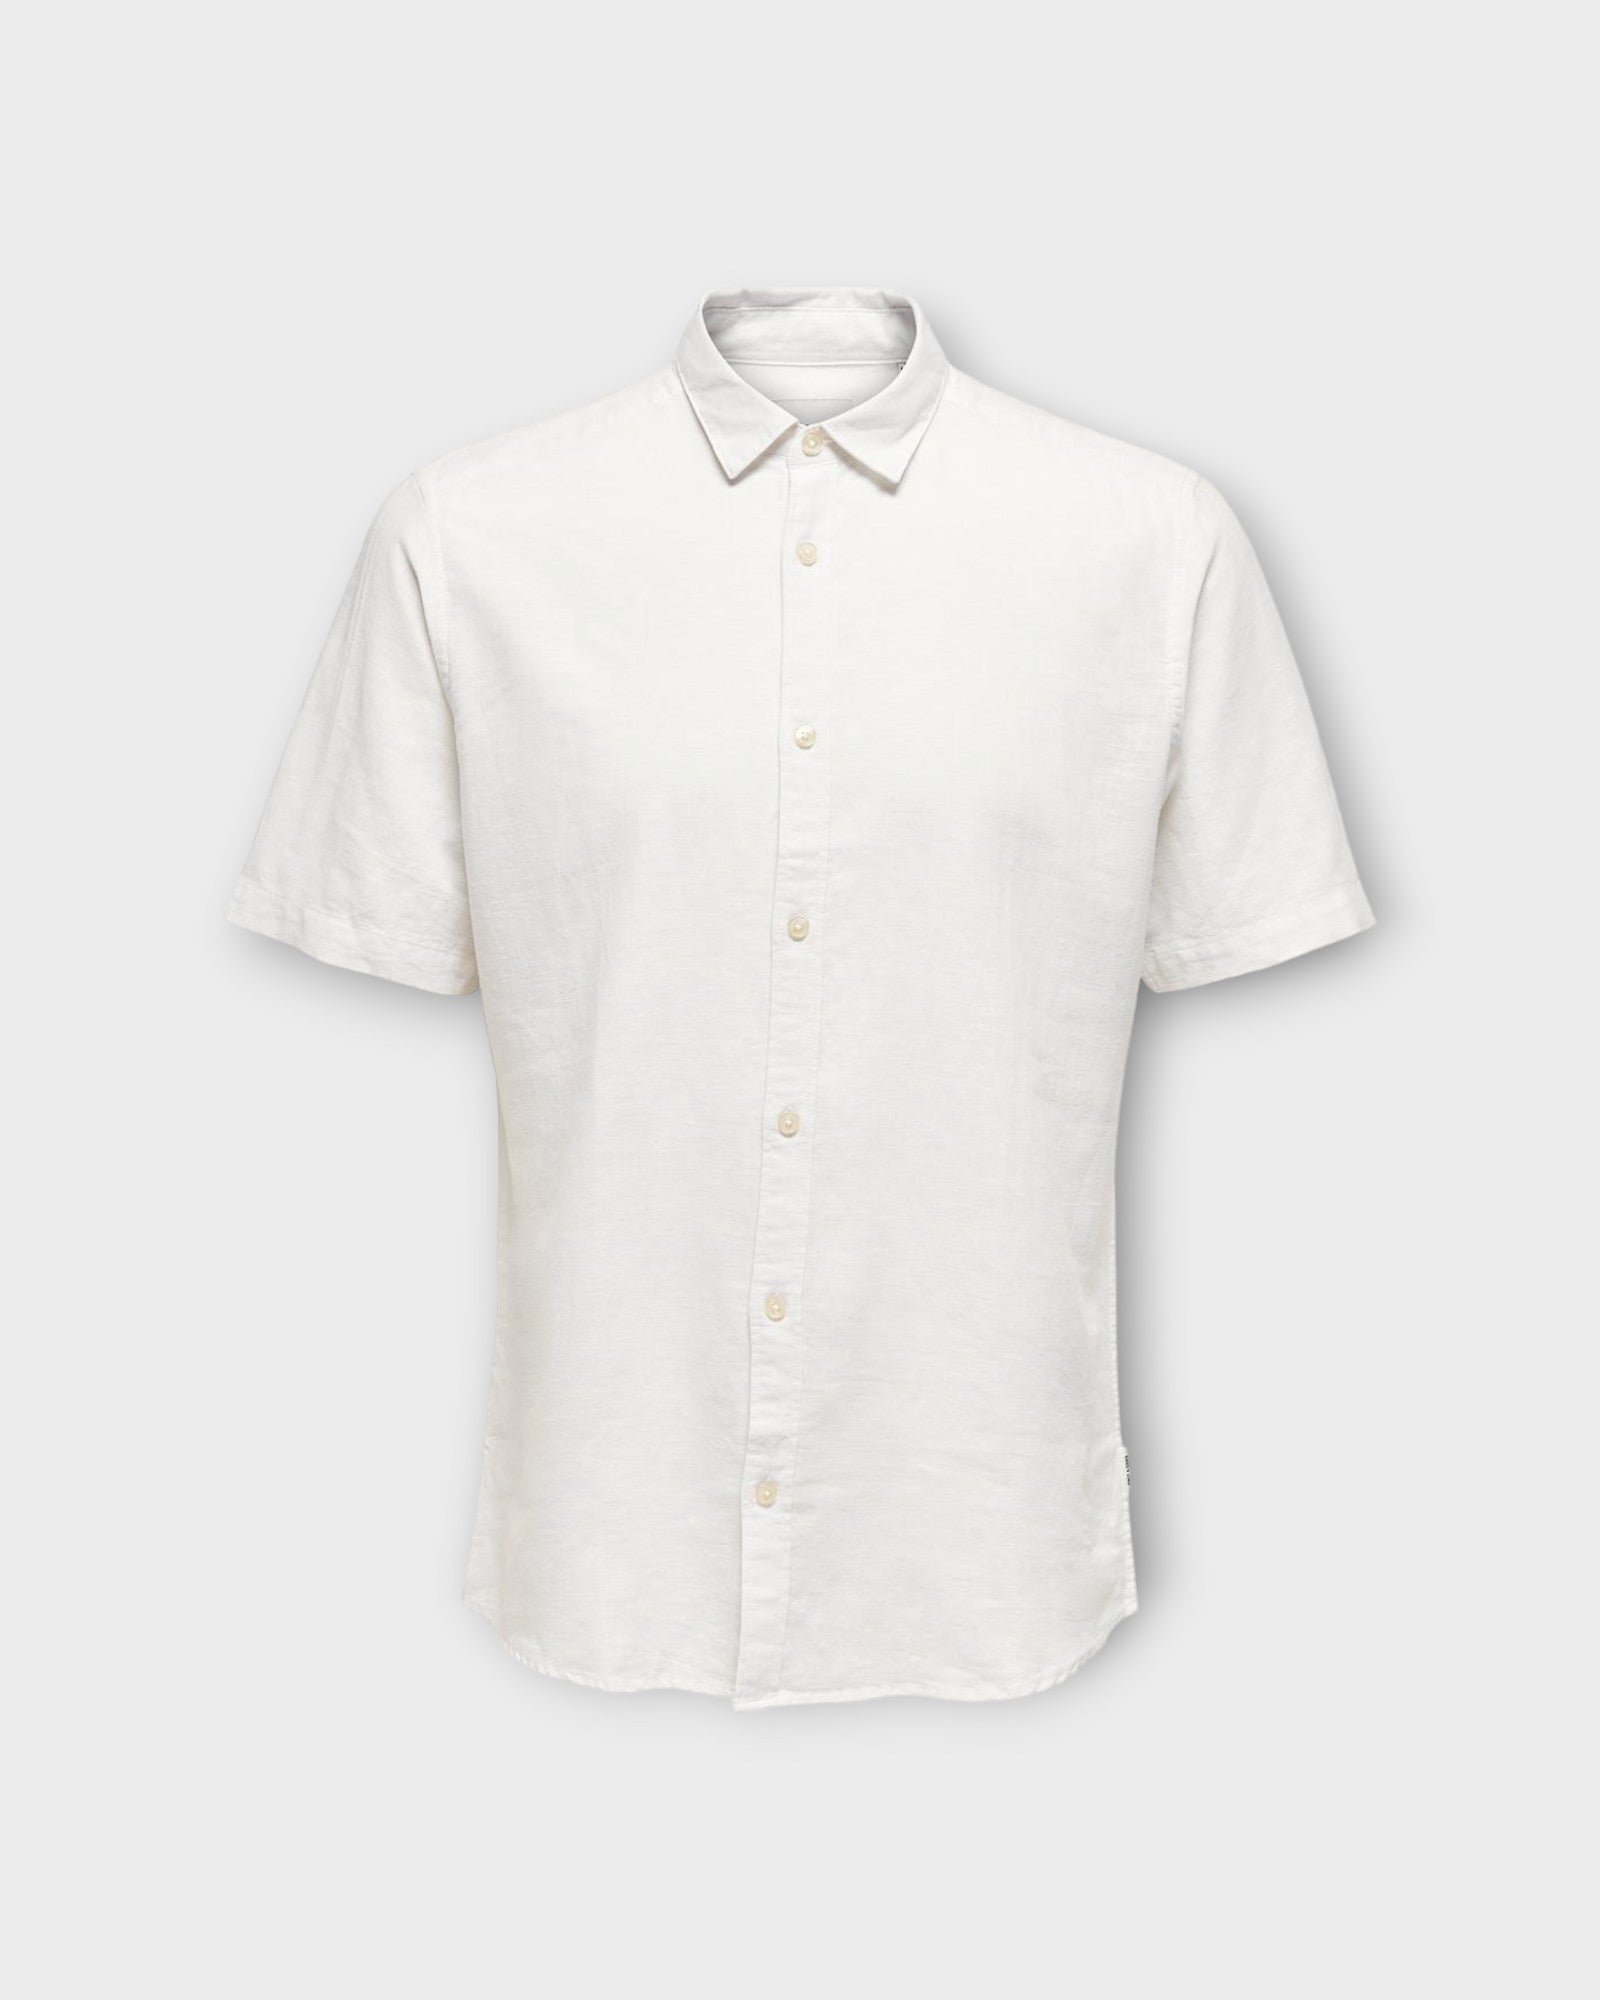 Caiden SS Solid Linen Shirt White fra Only and Sons. Kortærmet hvid hørskjorte til mænd. Her set forfra.